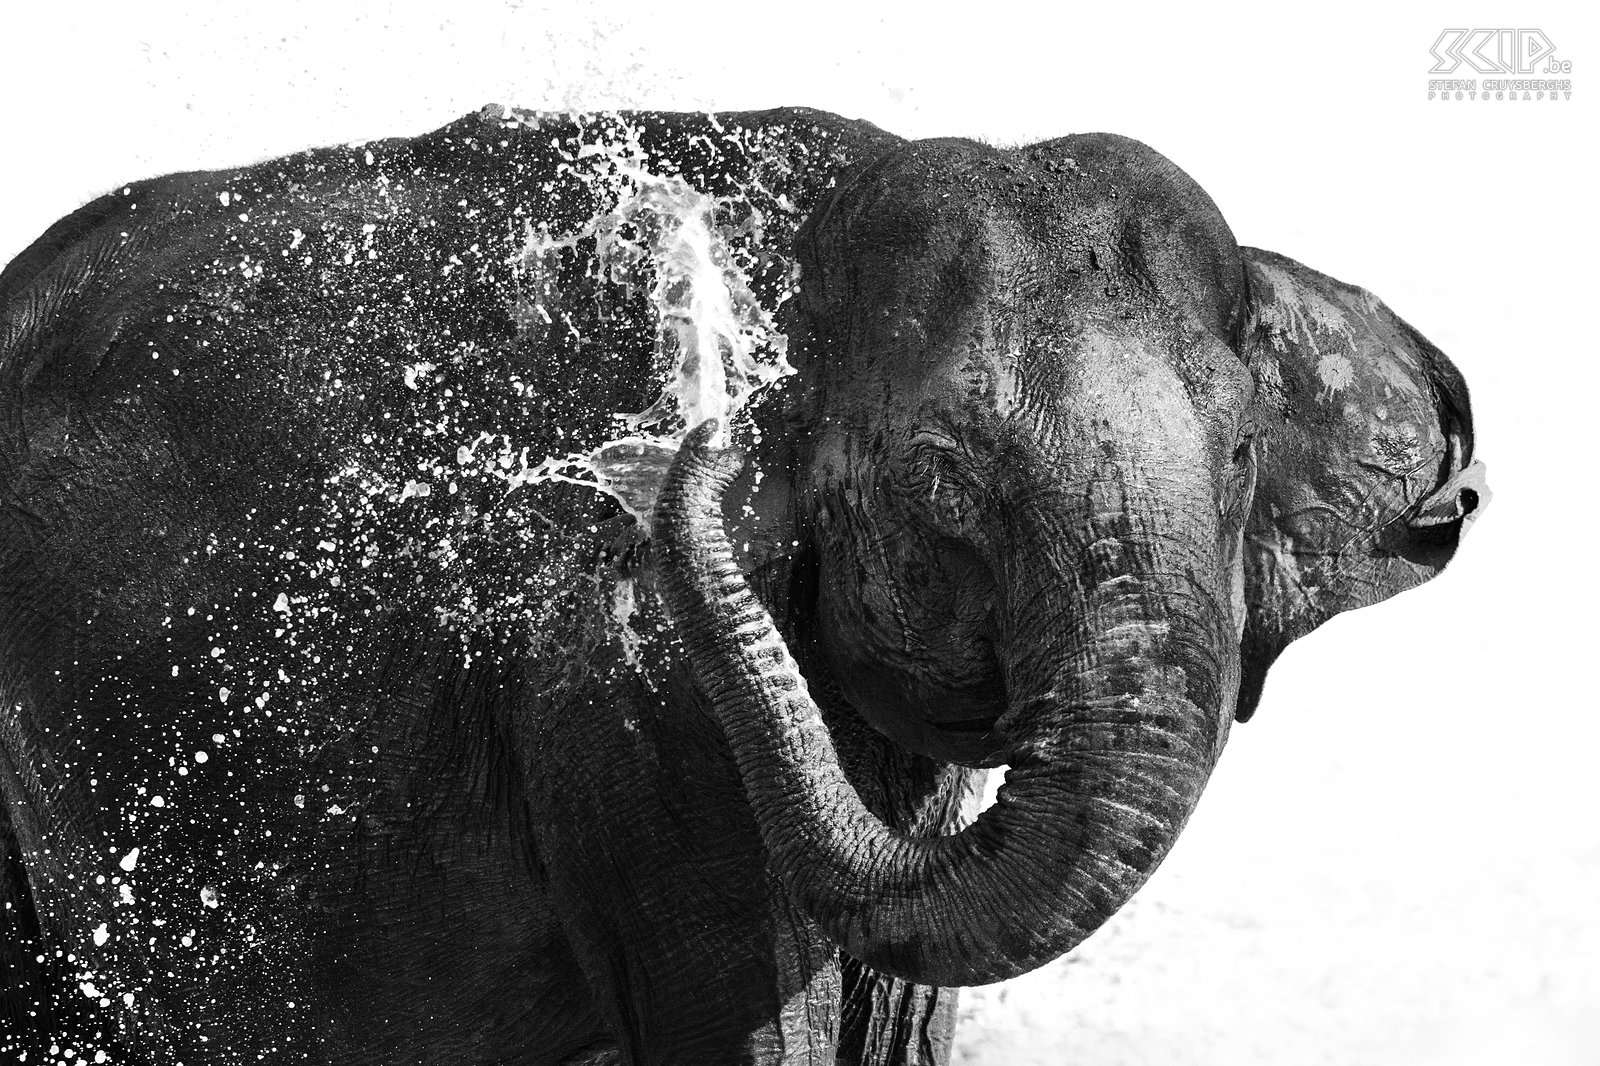 Kabini - Olifant Een Indische olifant die aan het afkoelen is in een waterpoel. Stefan Cruysberghs